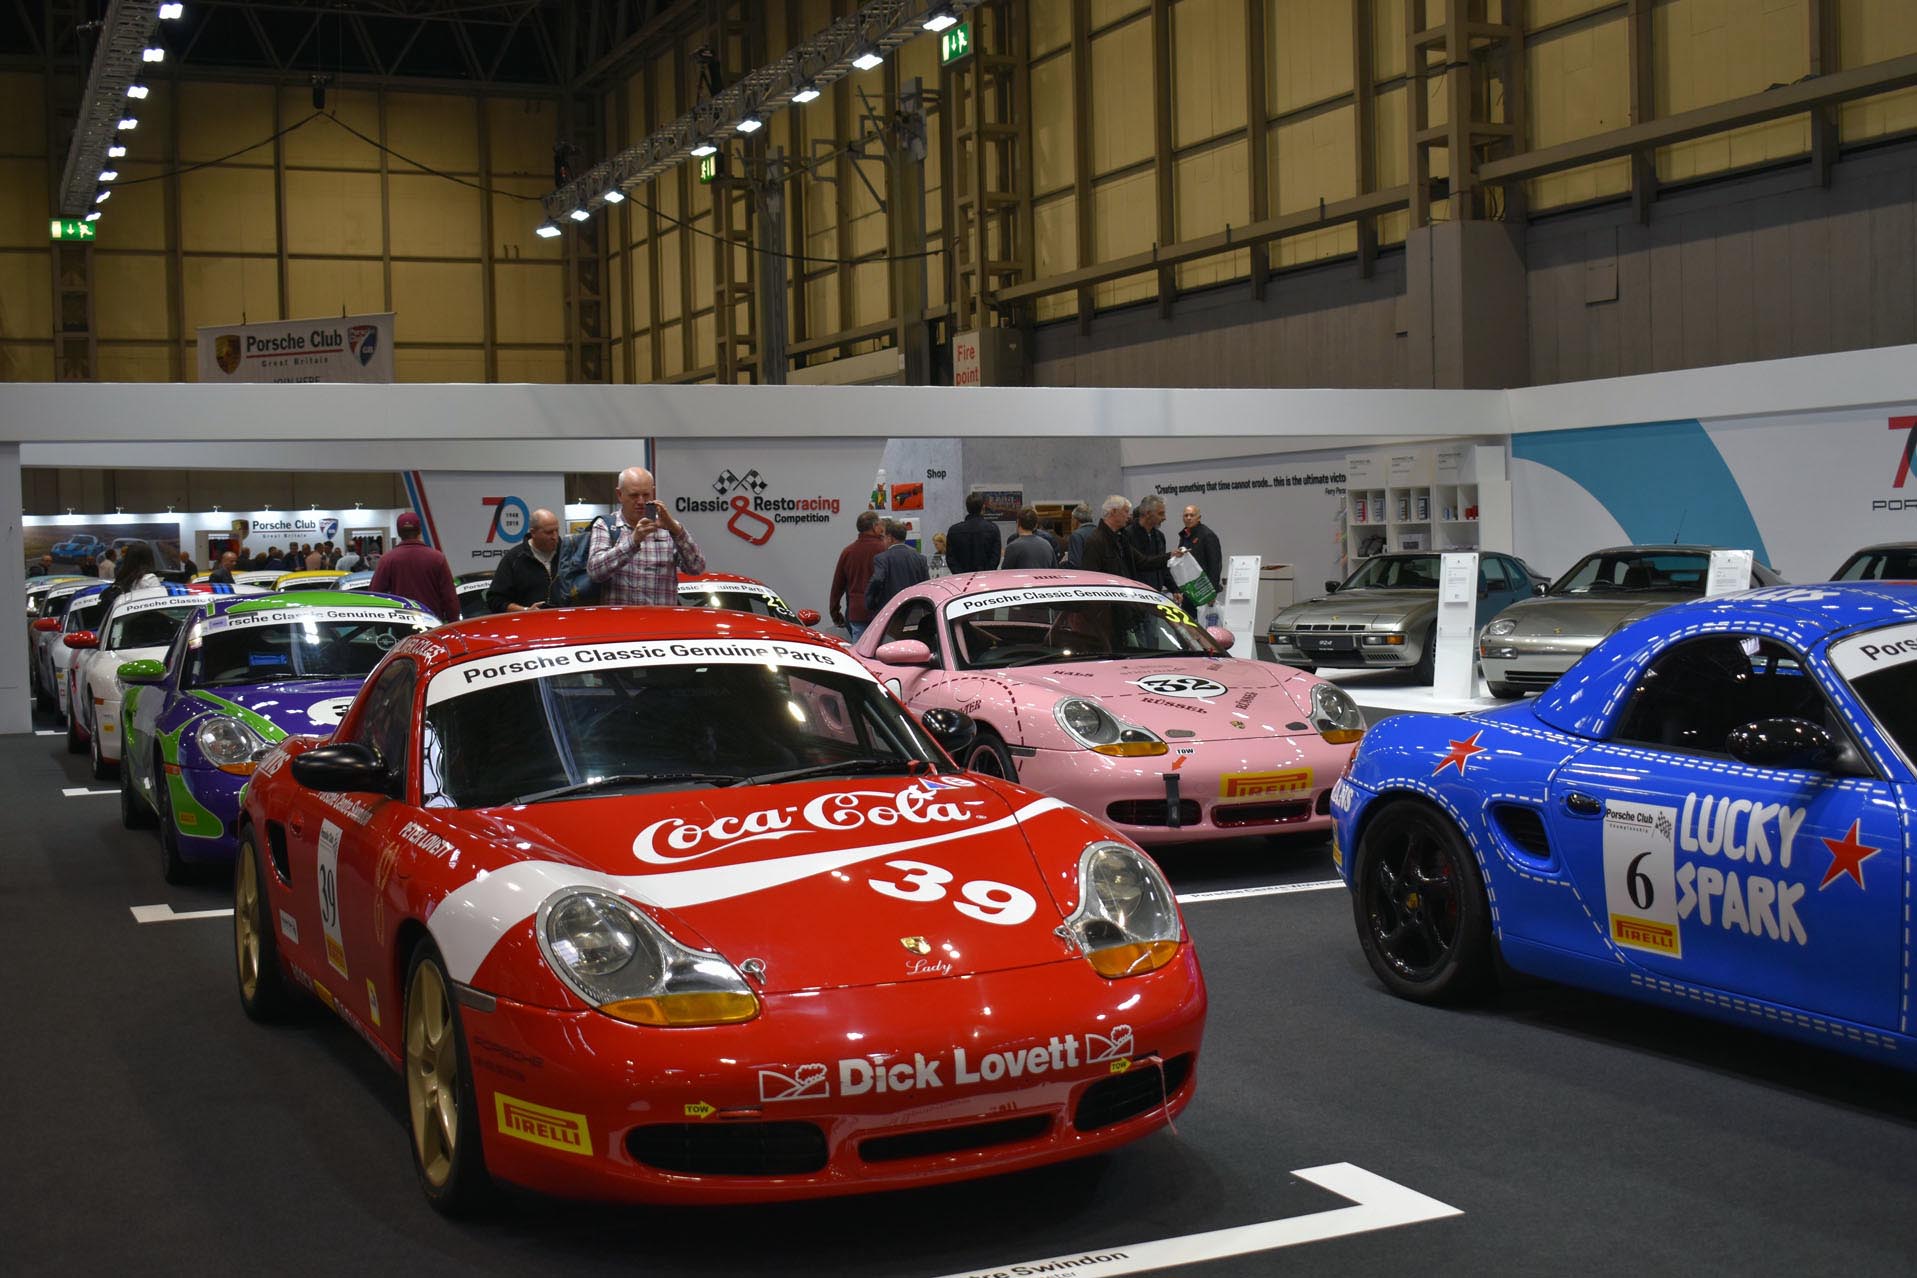 Porsche Club Cars